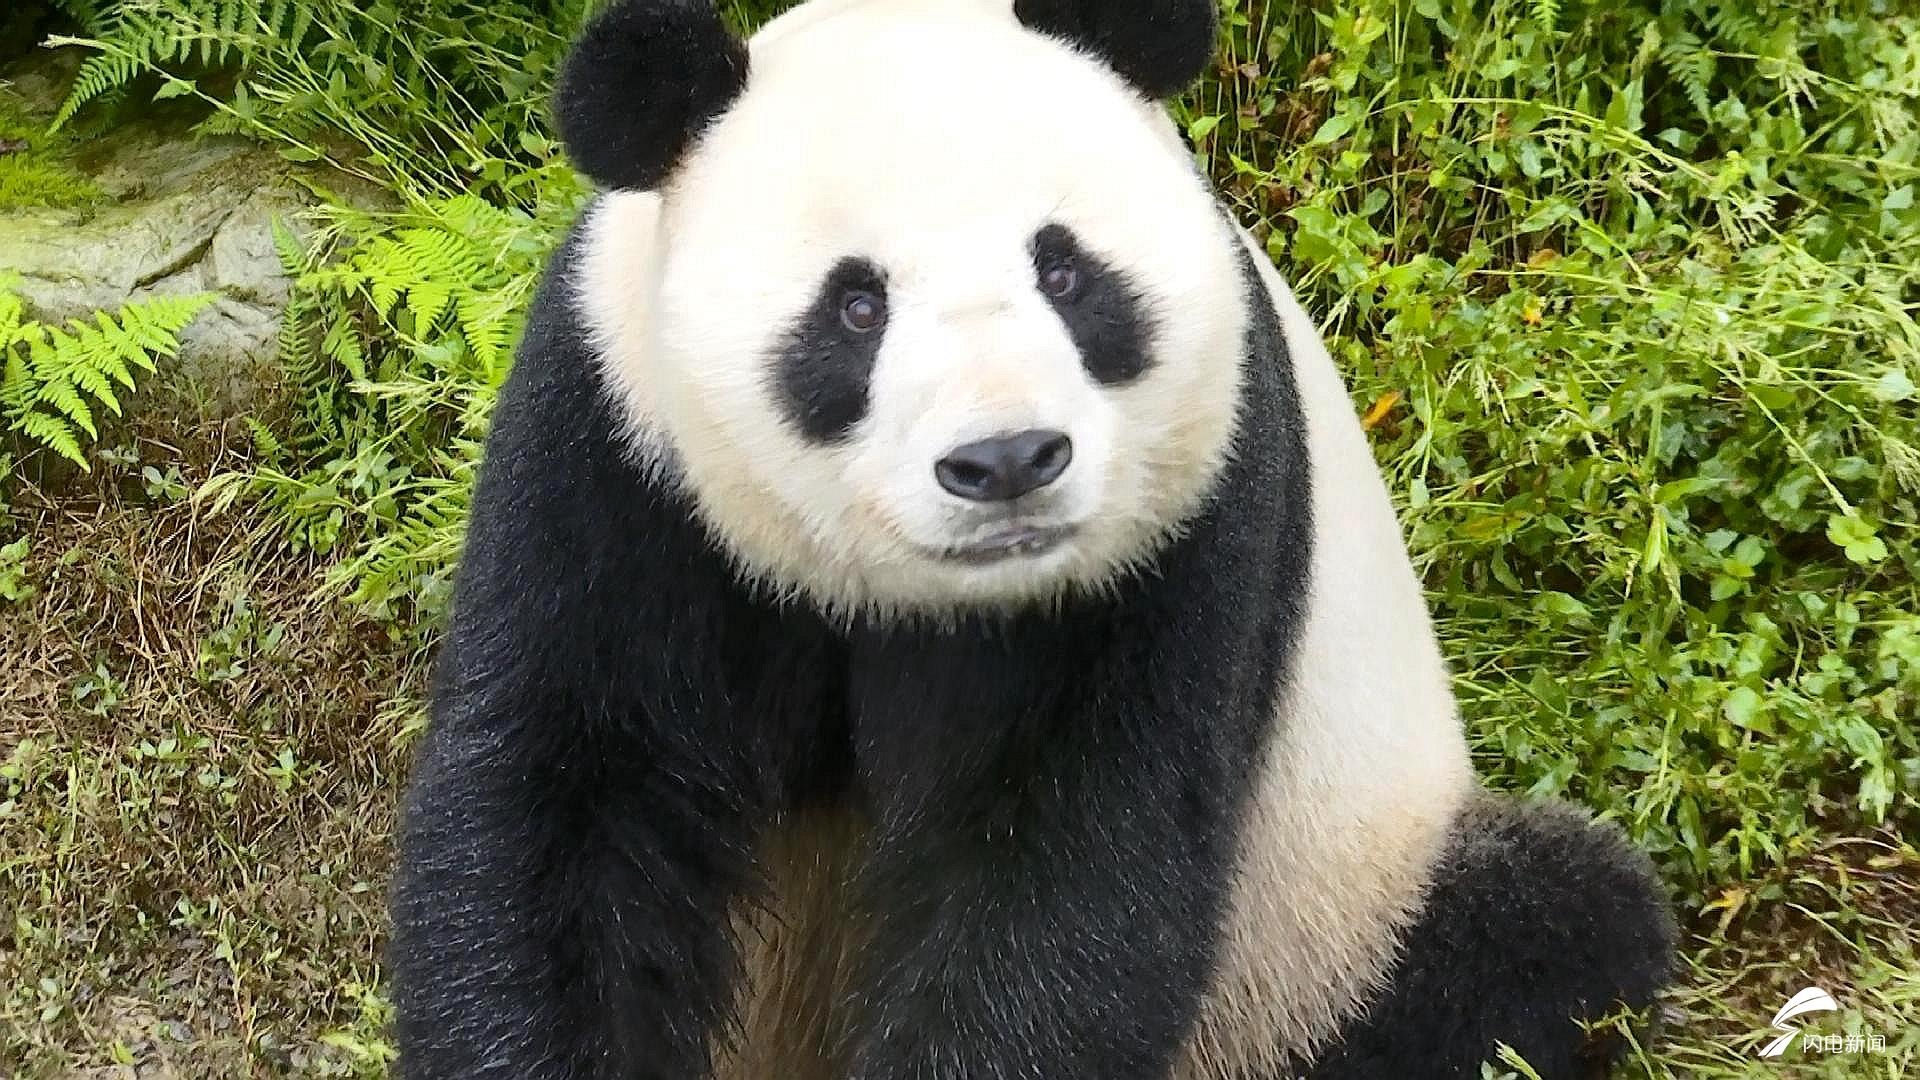 毛茸茸的脑袋,炯炯有神的眼睛……记者见到这只大熊猫第一眼就被它圈